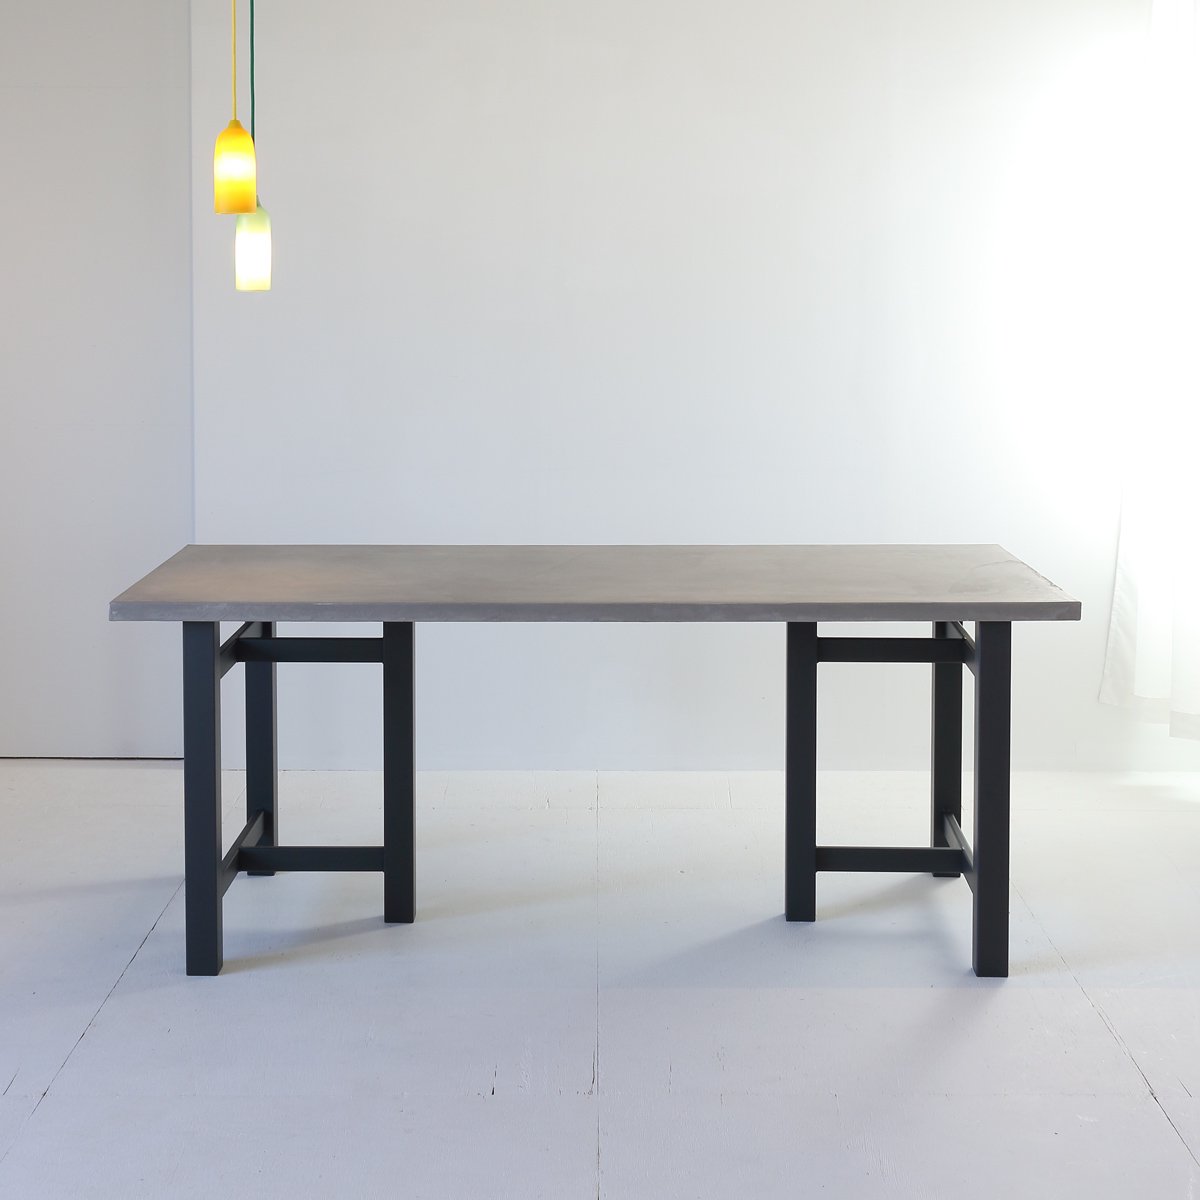 アレンジできるテーブル モールテックスダイニングテーブル180×80